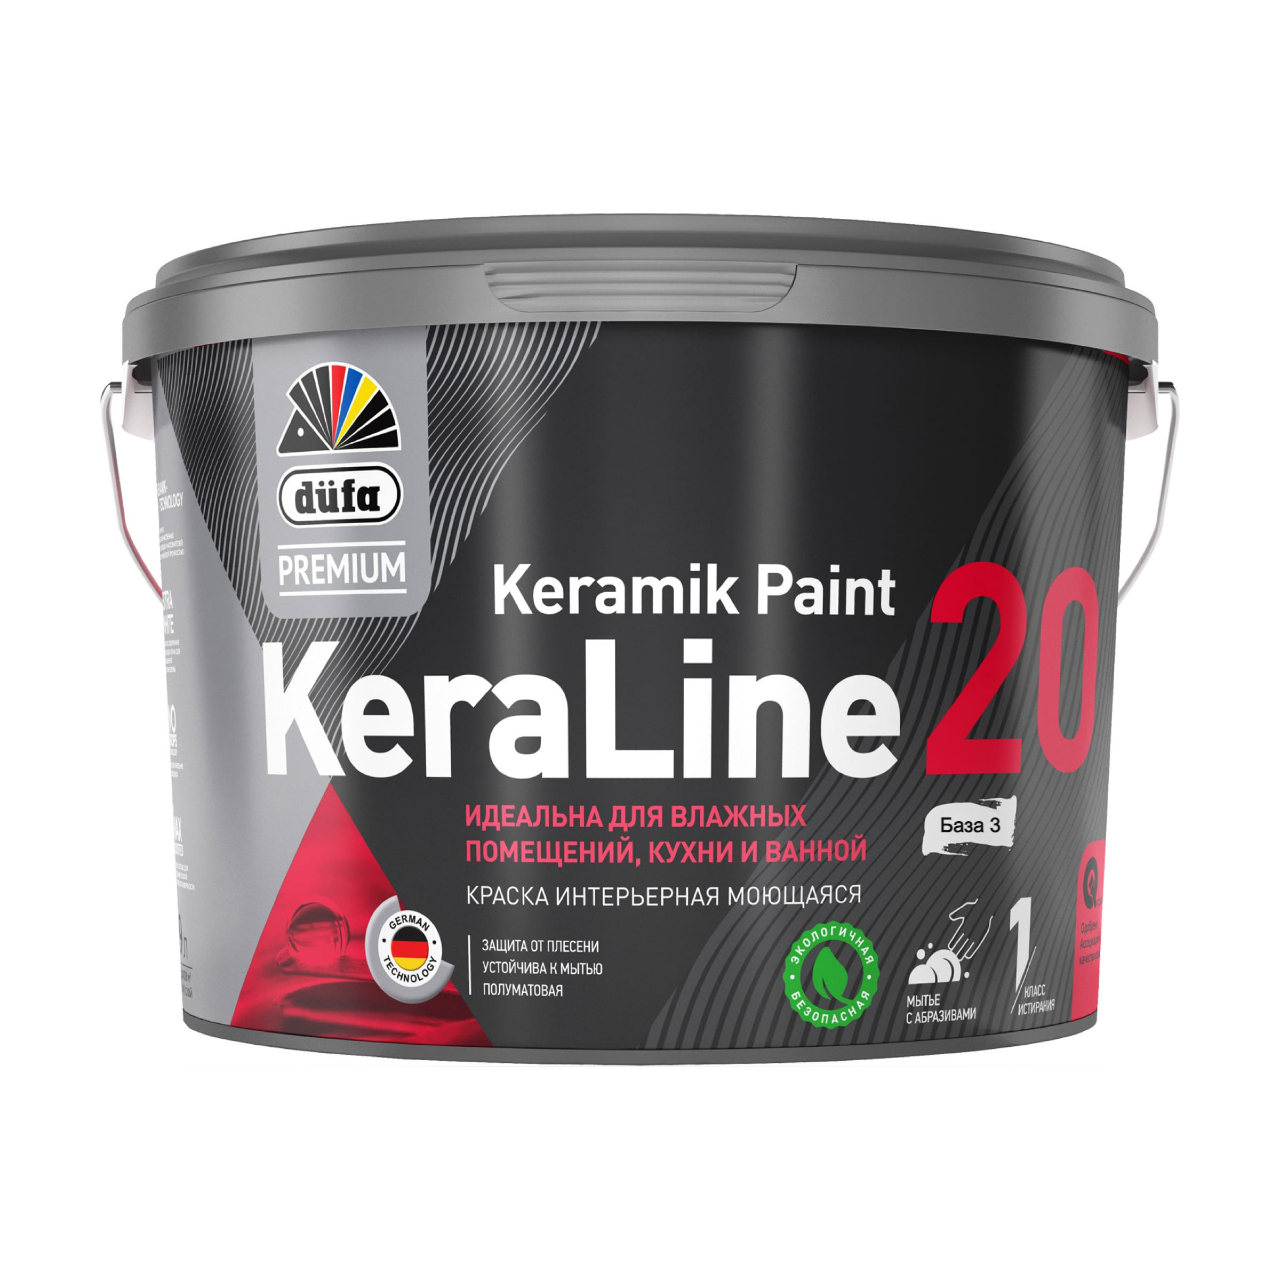 90190638 Краска для влажных помещений Premium KeraLine Keramik Paint 20 полуматовая прозрачная база 3 2.5 л STLM-0126785 DUFA